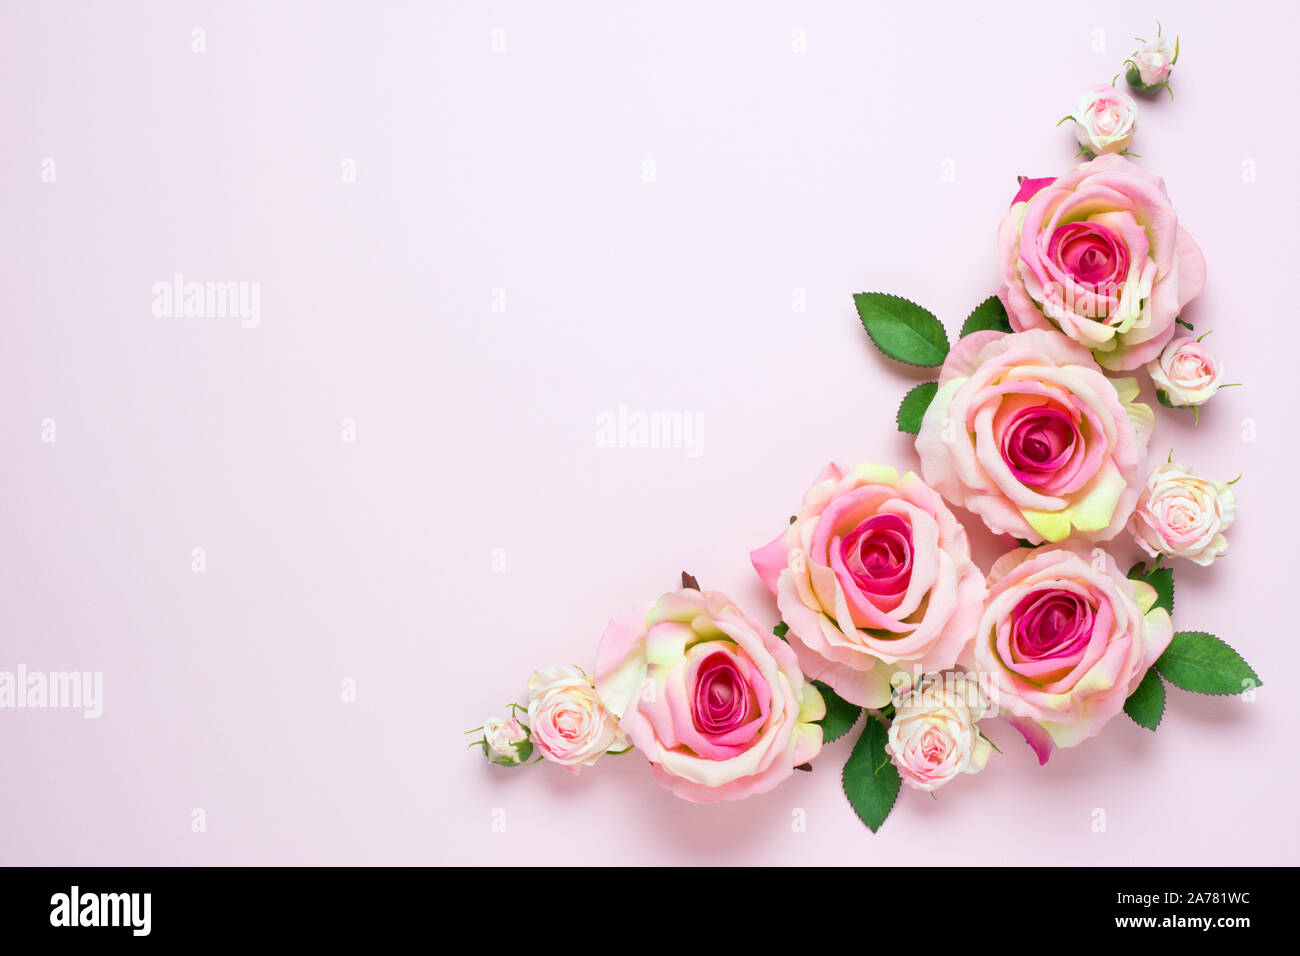 Hình nền cưới hoa hồng sẽ làm cho ngày cưới của bạn trở nên lãng mạn và tràn đầy yêu thương. Với họa tiết hoa hồng đỏ tươi và phong cách trang trí tinh tế, hình nền cưới hoa hồng sẽ tôn lên vẻ đẹp thanh lịch và sang trọng của ngày trọng đại của bạn. 